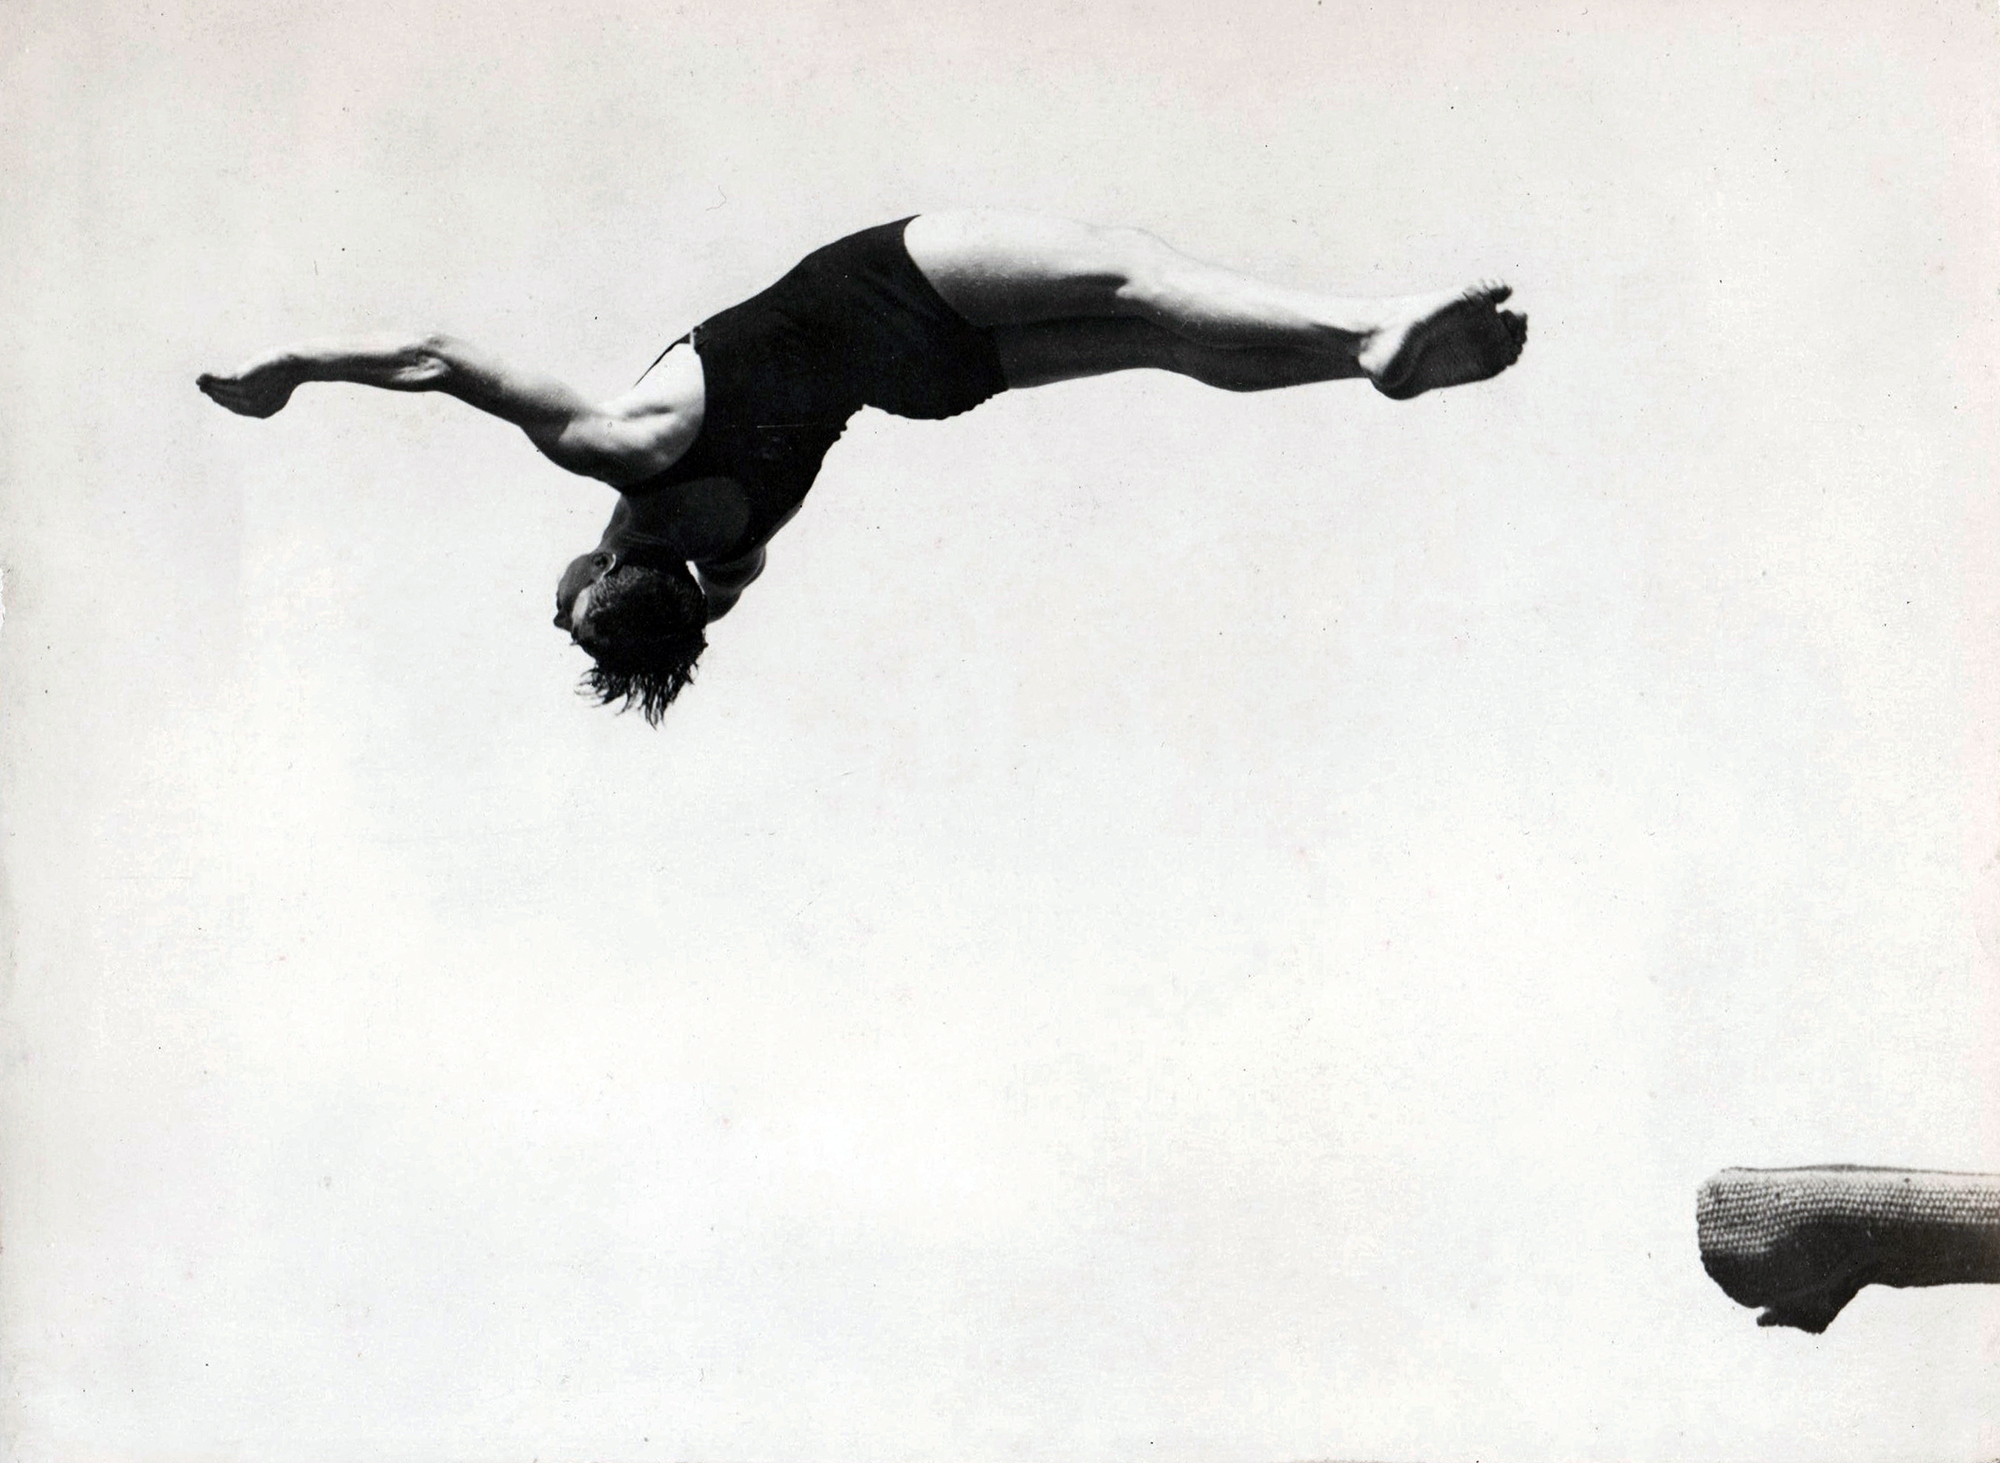 Bob Denneboom realizando un salto – década de los 1930